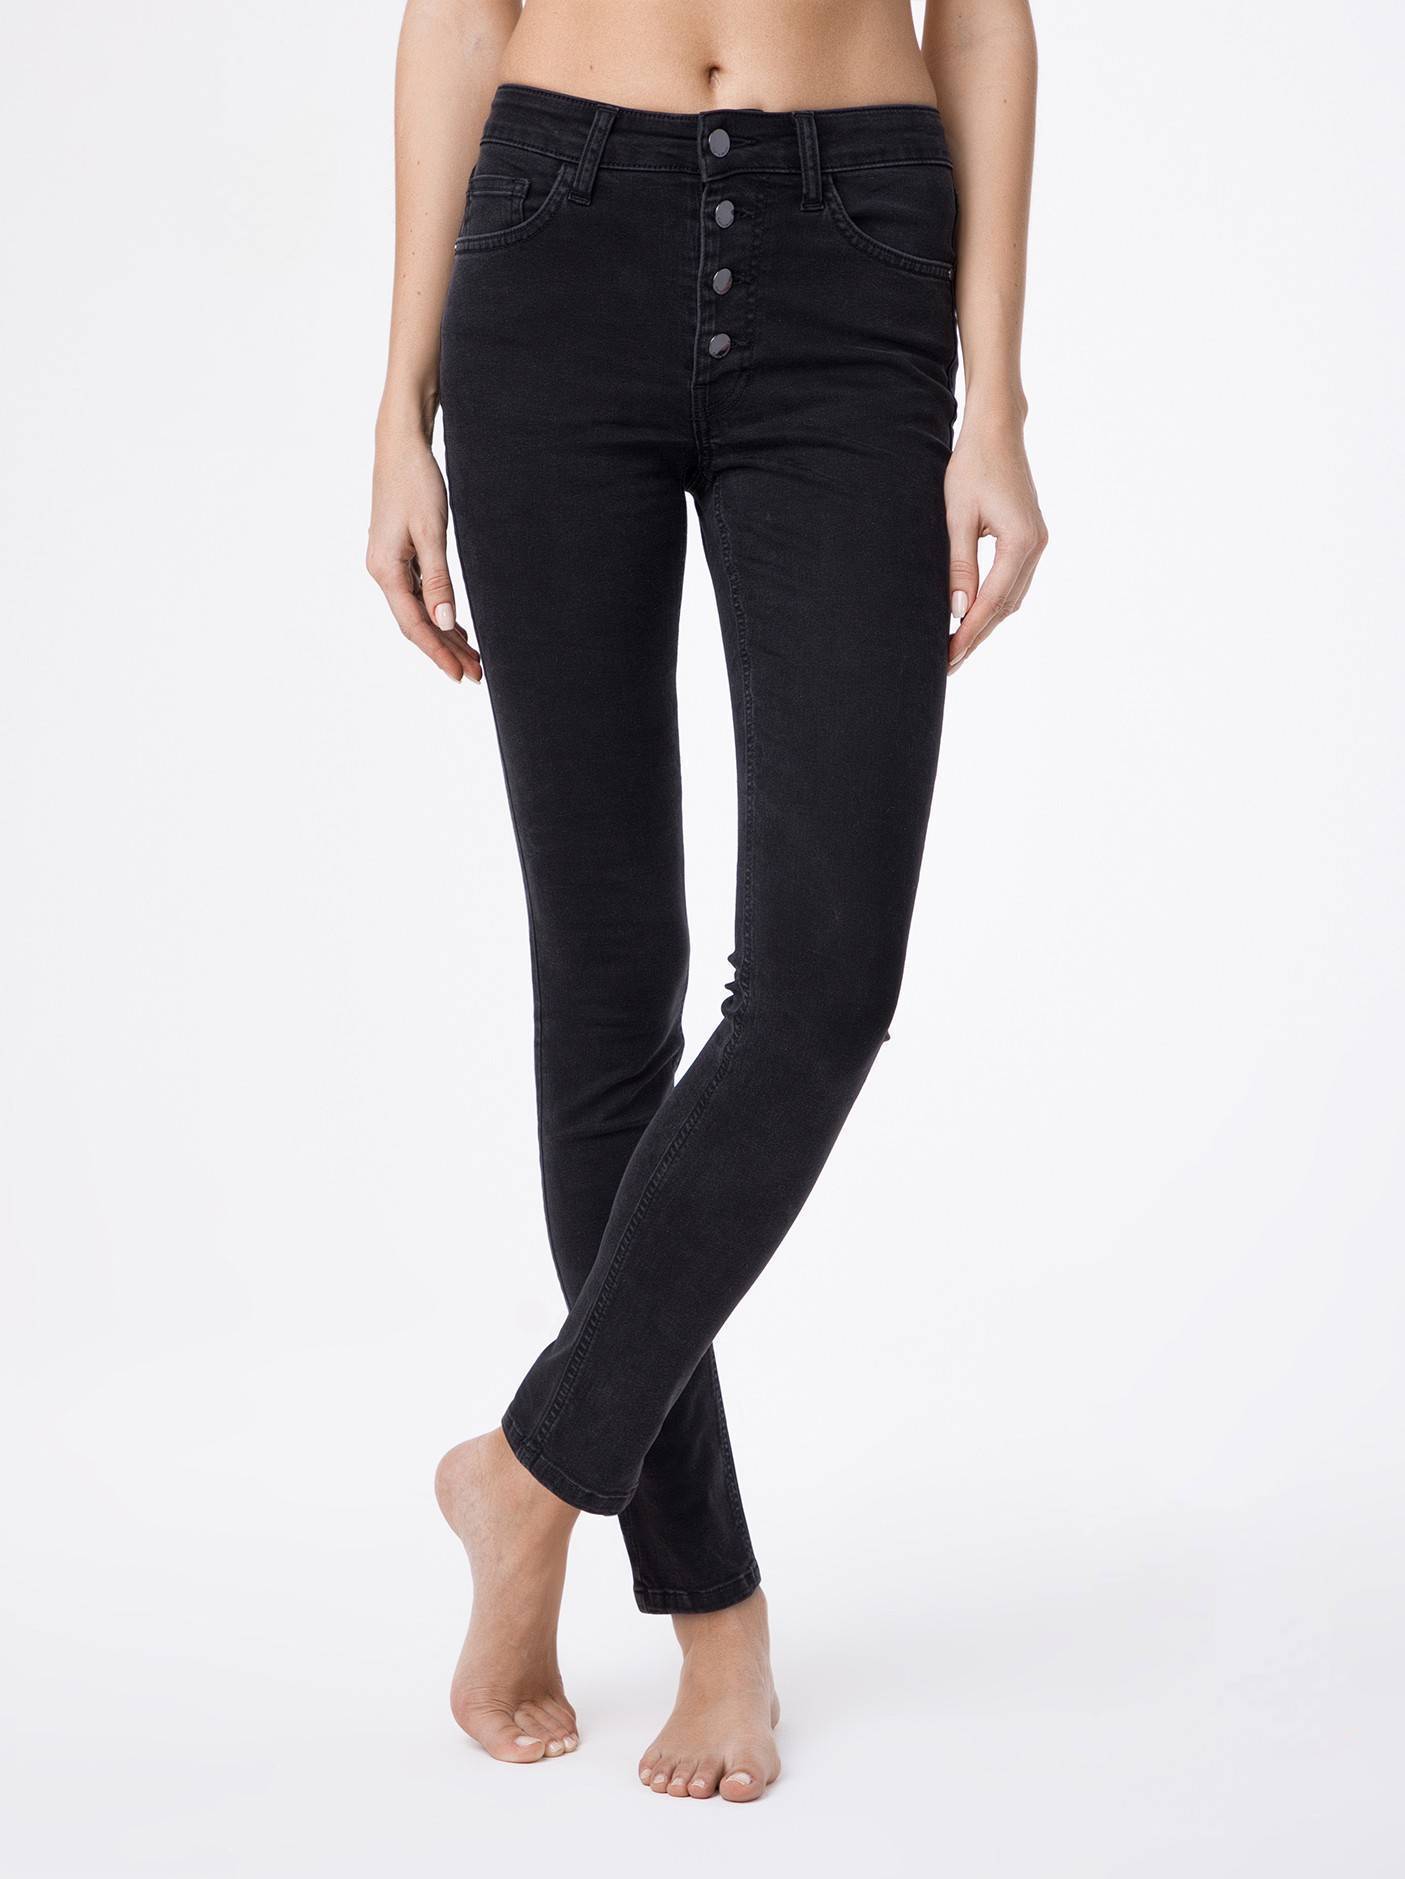 Моделирующие eco-friendly джинсы с высокой посадкой CON-120 Conte ⭐️, цвет washed black, размер 164-102 - фото 1